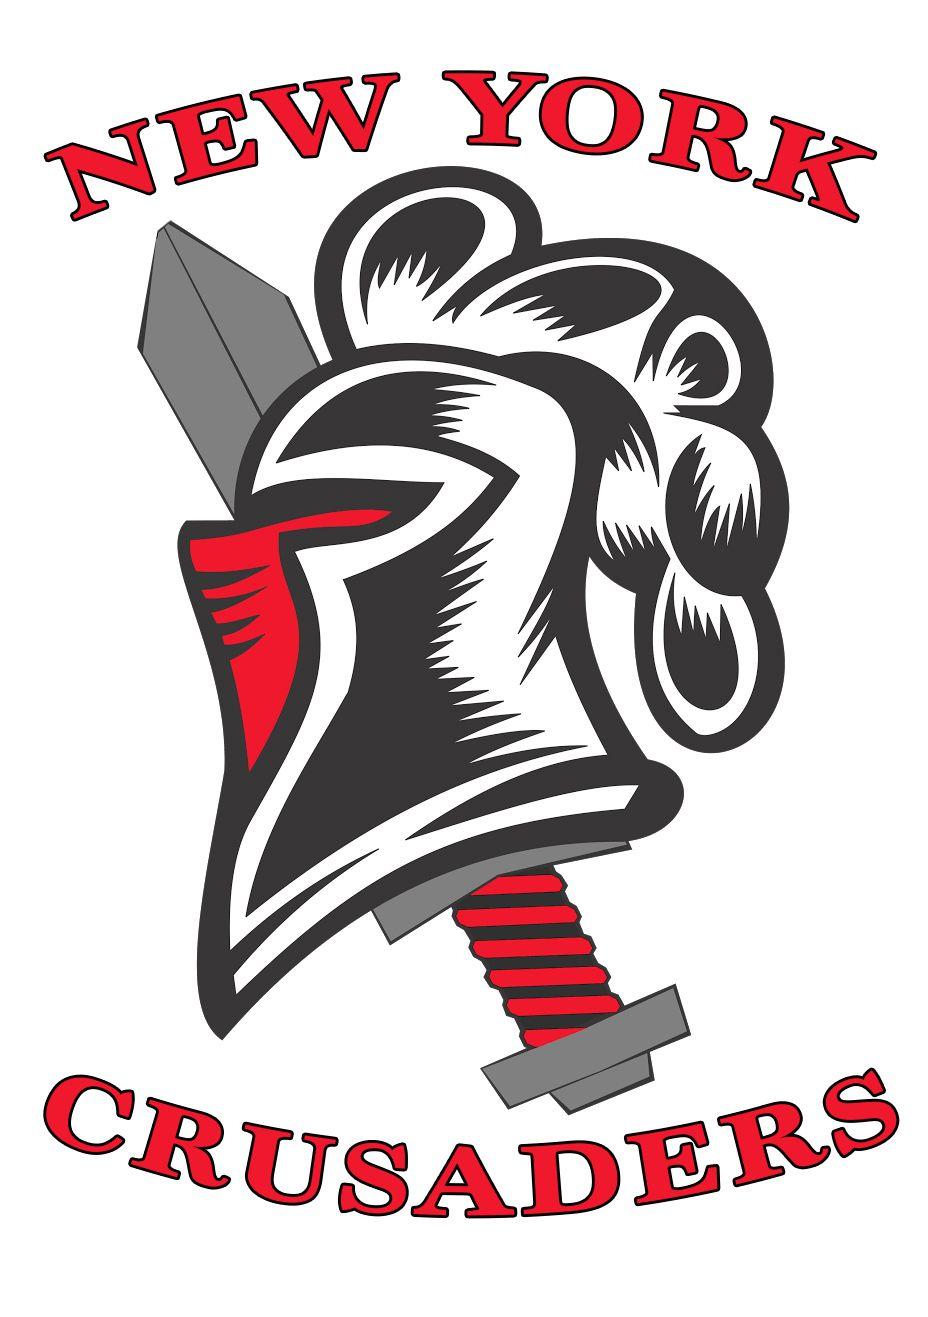 Crusader Football Logo - New York Crusaders Non Profit Organization